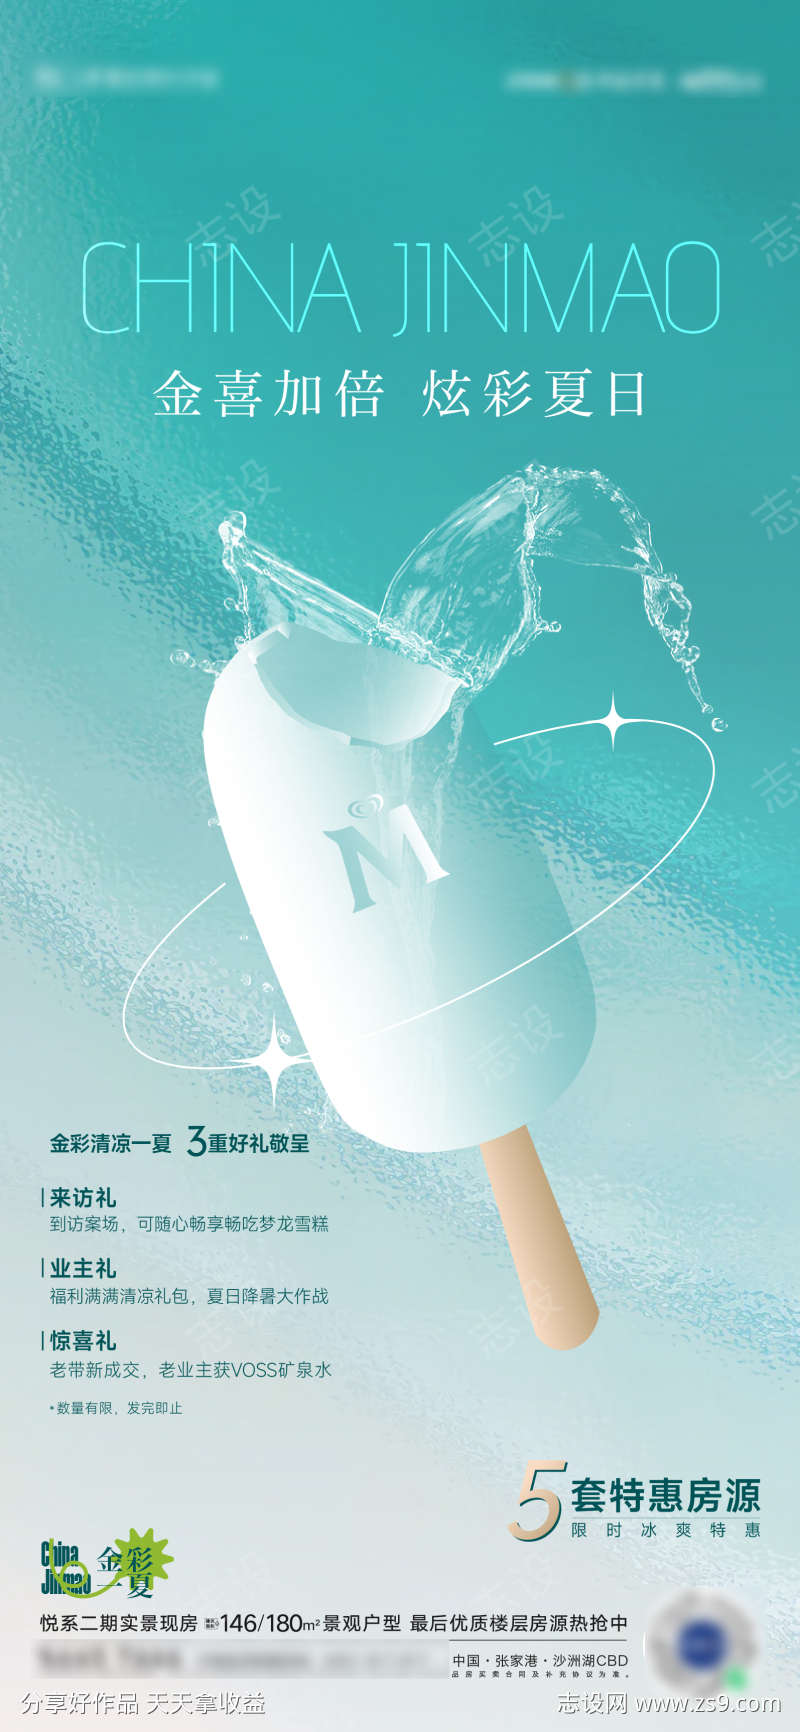 夏天梦龙冰淇淋活动海报